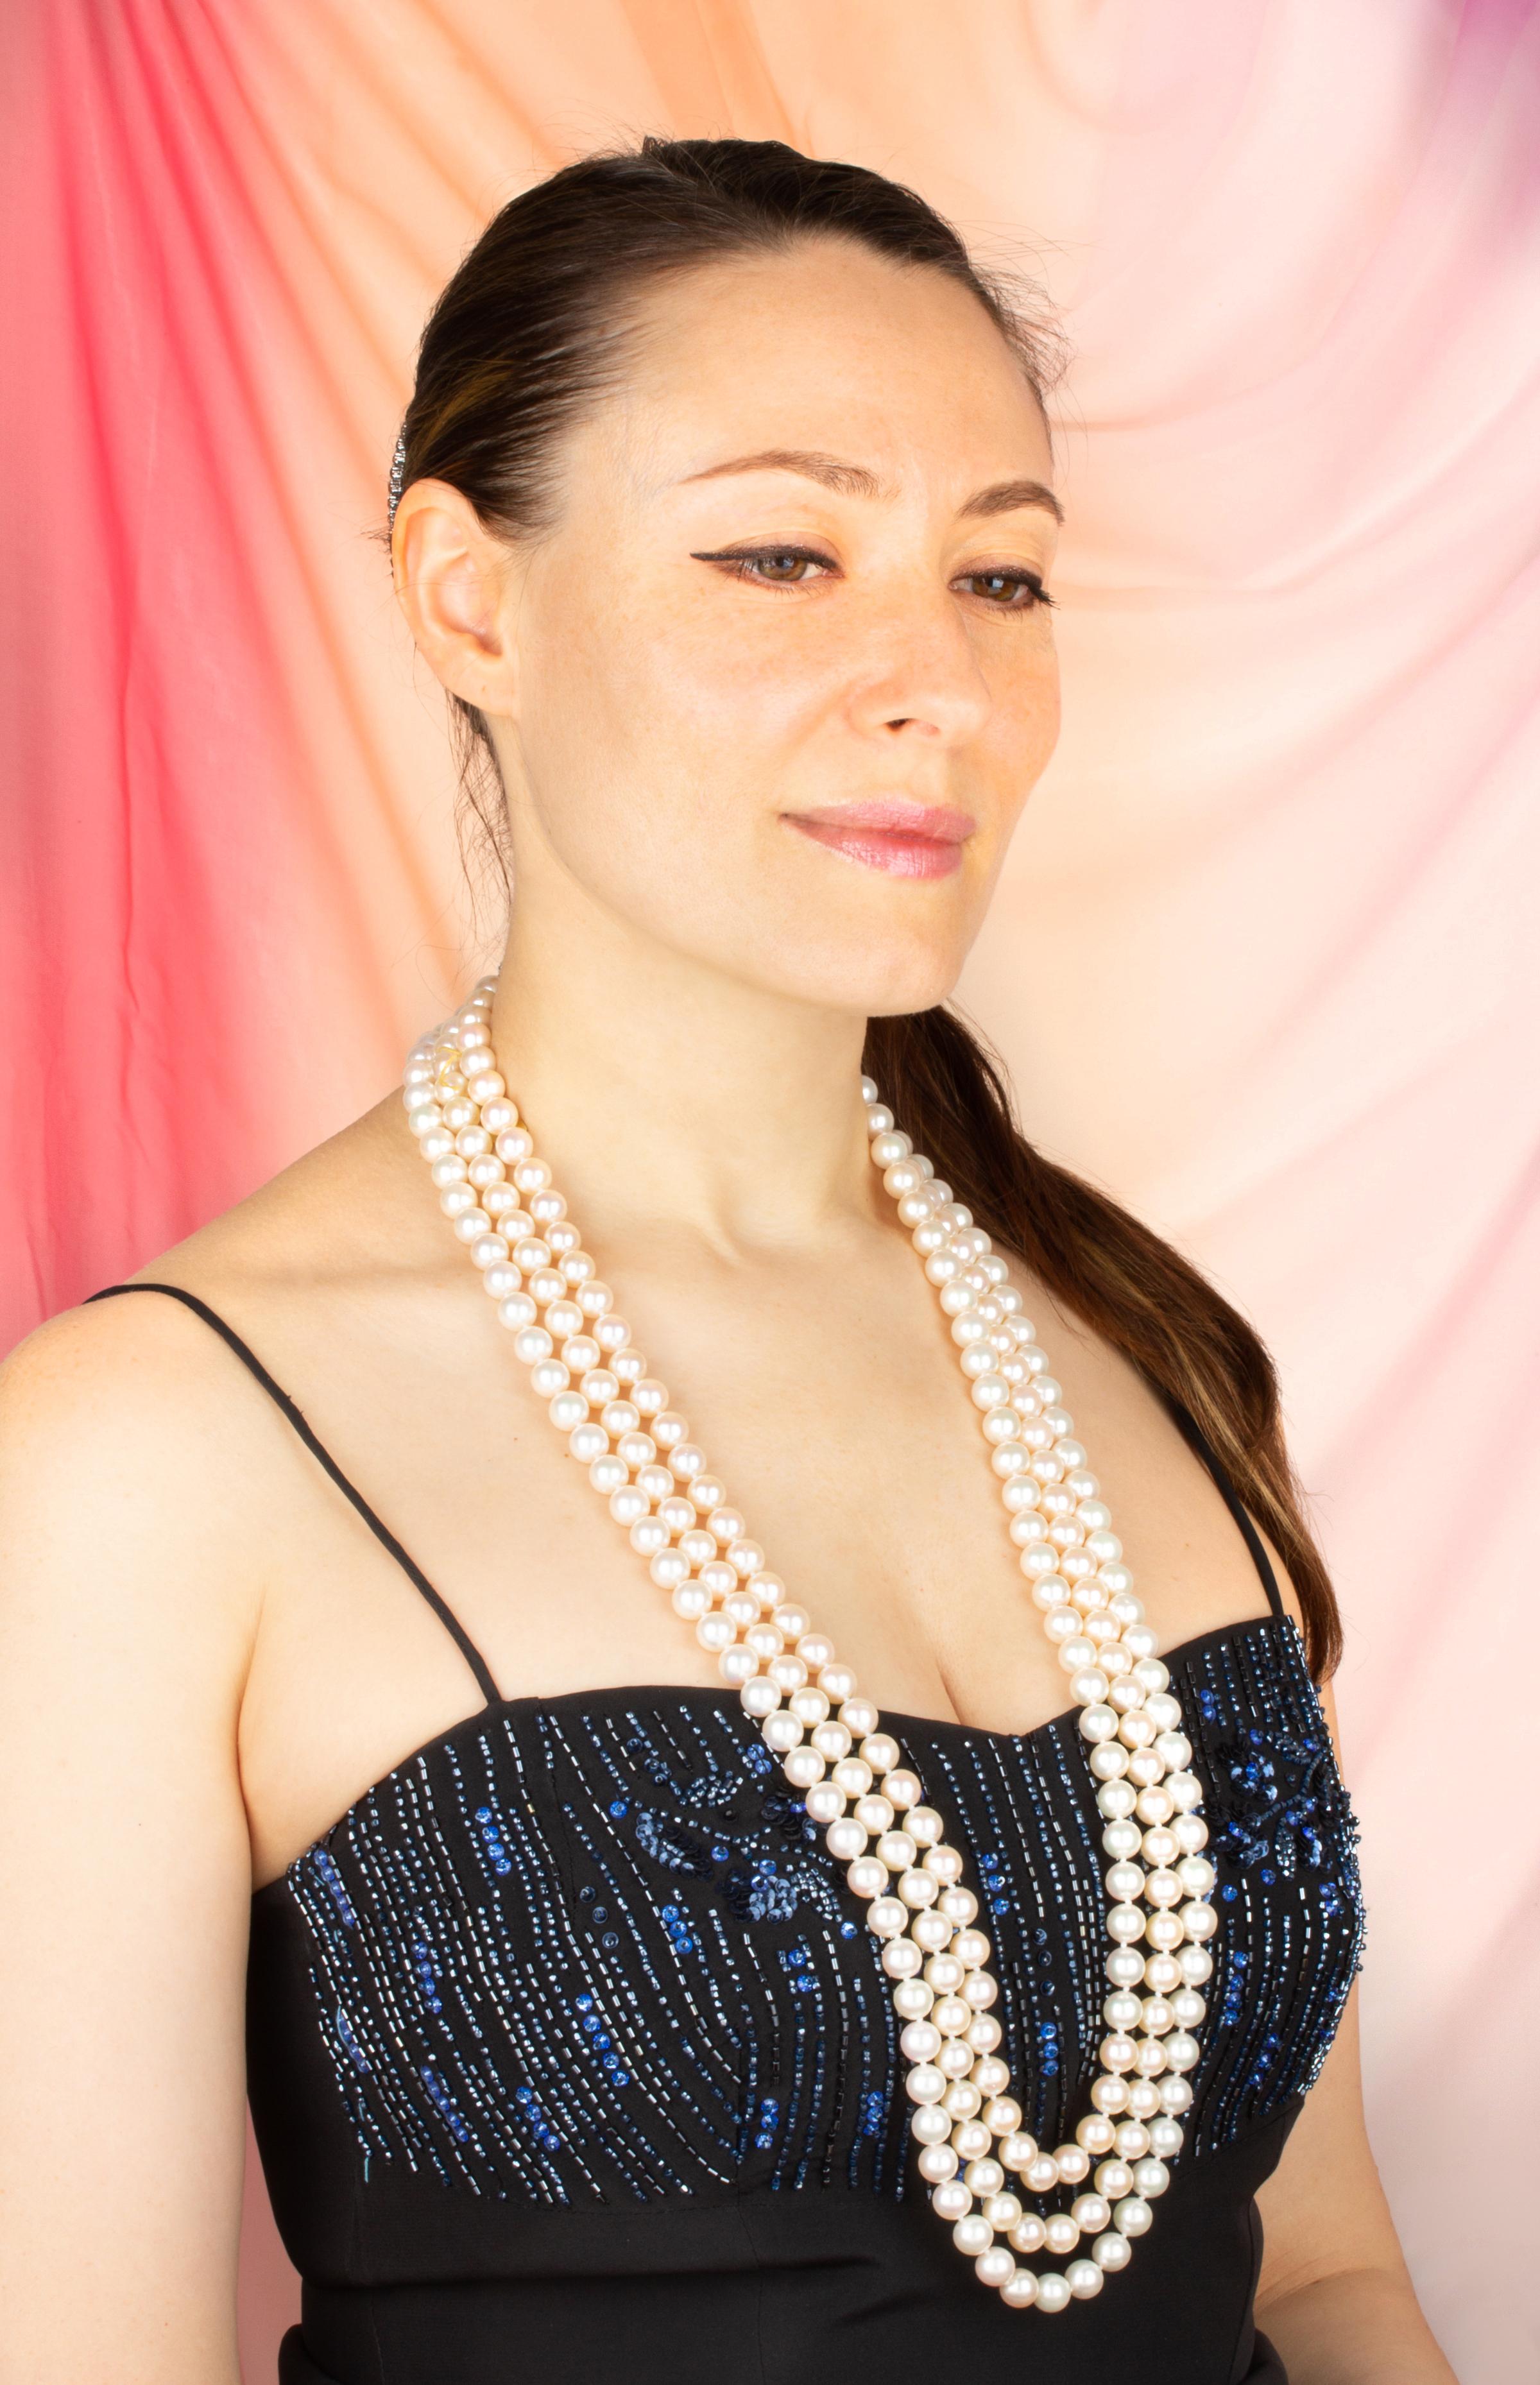 Le triple collier de perles se compose de 6 rangs originaux de perles japonaises d'une nacre, d'un lustre et d'une iridescence ravissants. Les perles sont homogènes et mesurent 9/9,5 mm de diamètre. Elles ont été extraites de coquillages Akoya